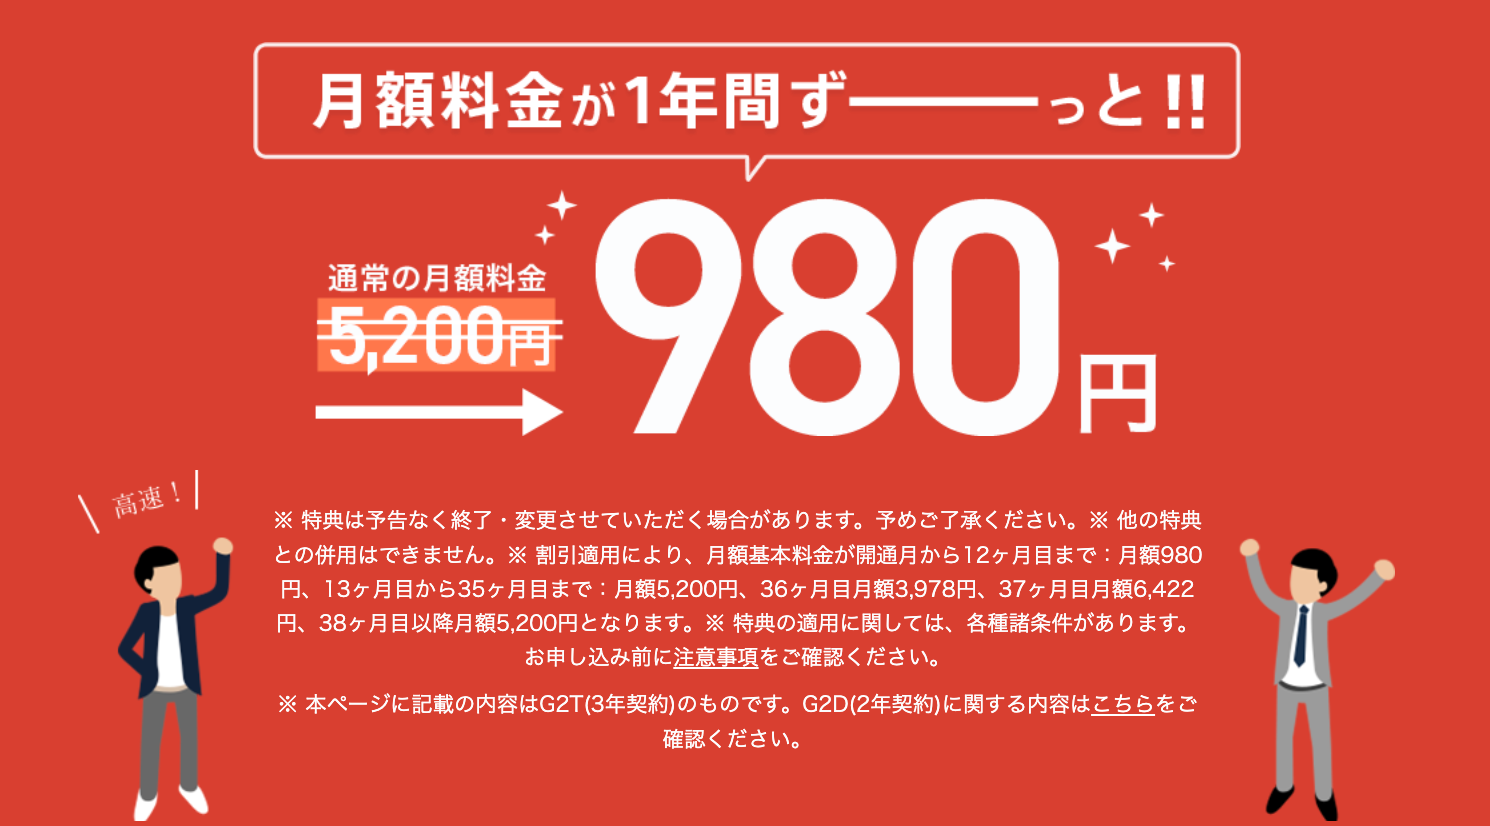 NURO光1年間月額980円特典